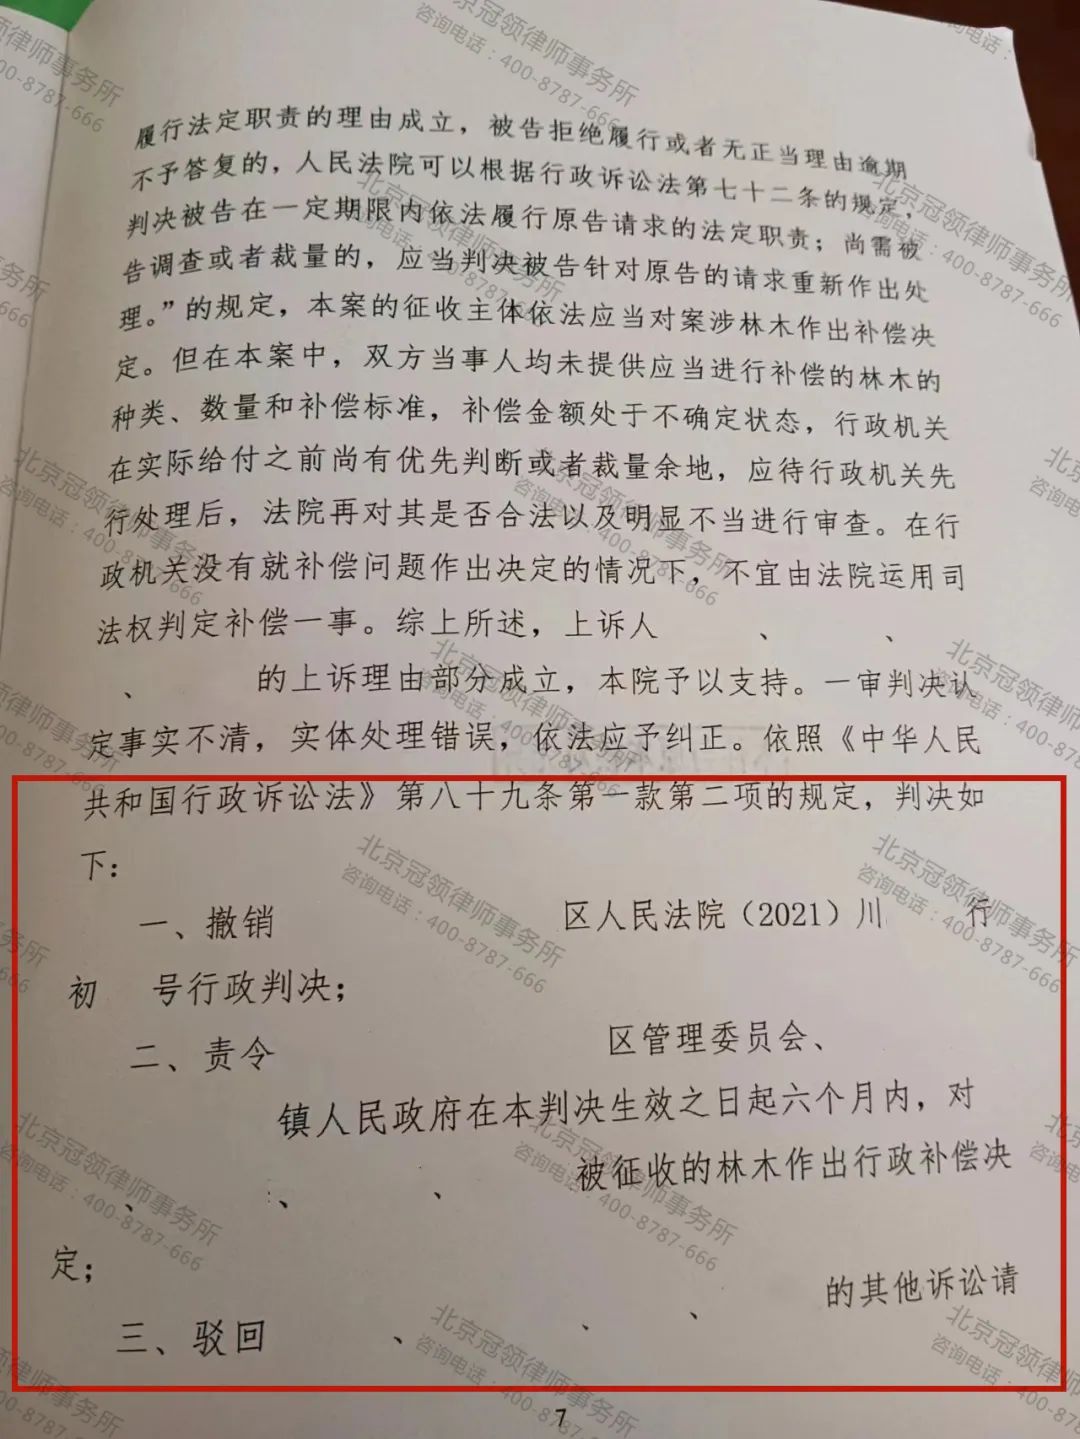 冠领律师代理的四川绵阳某区土地征收补偿案上诉获胜-图2